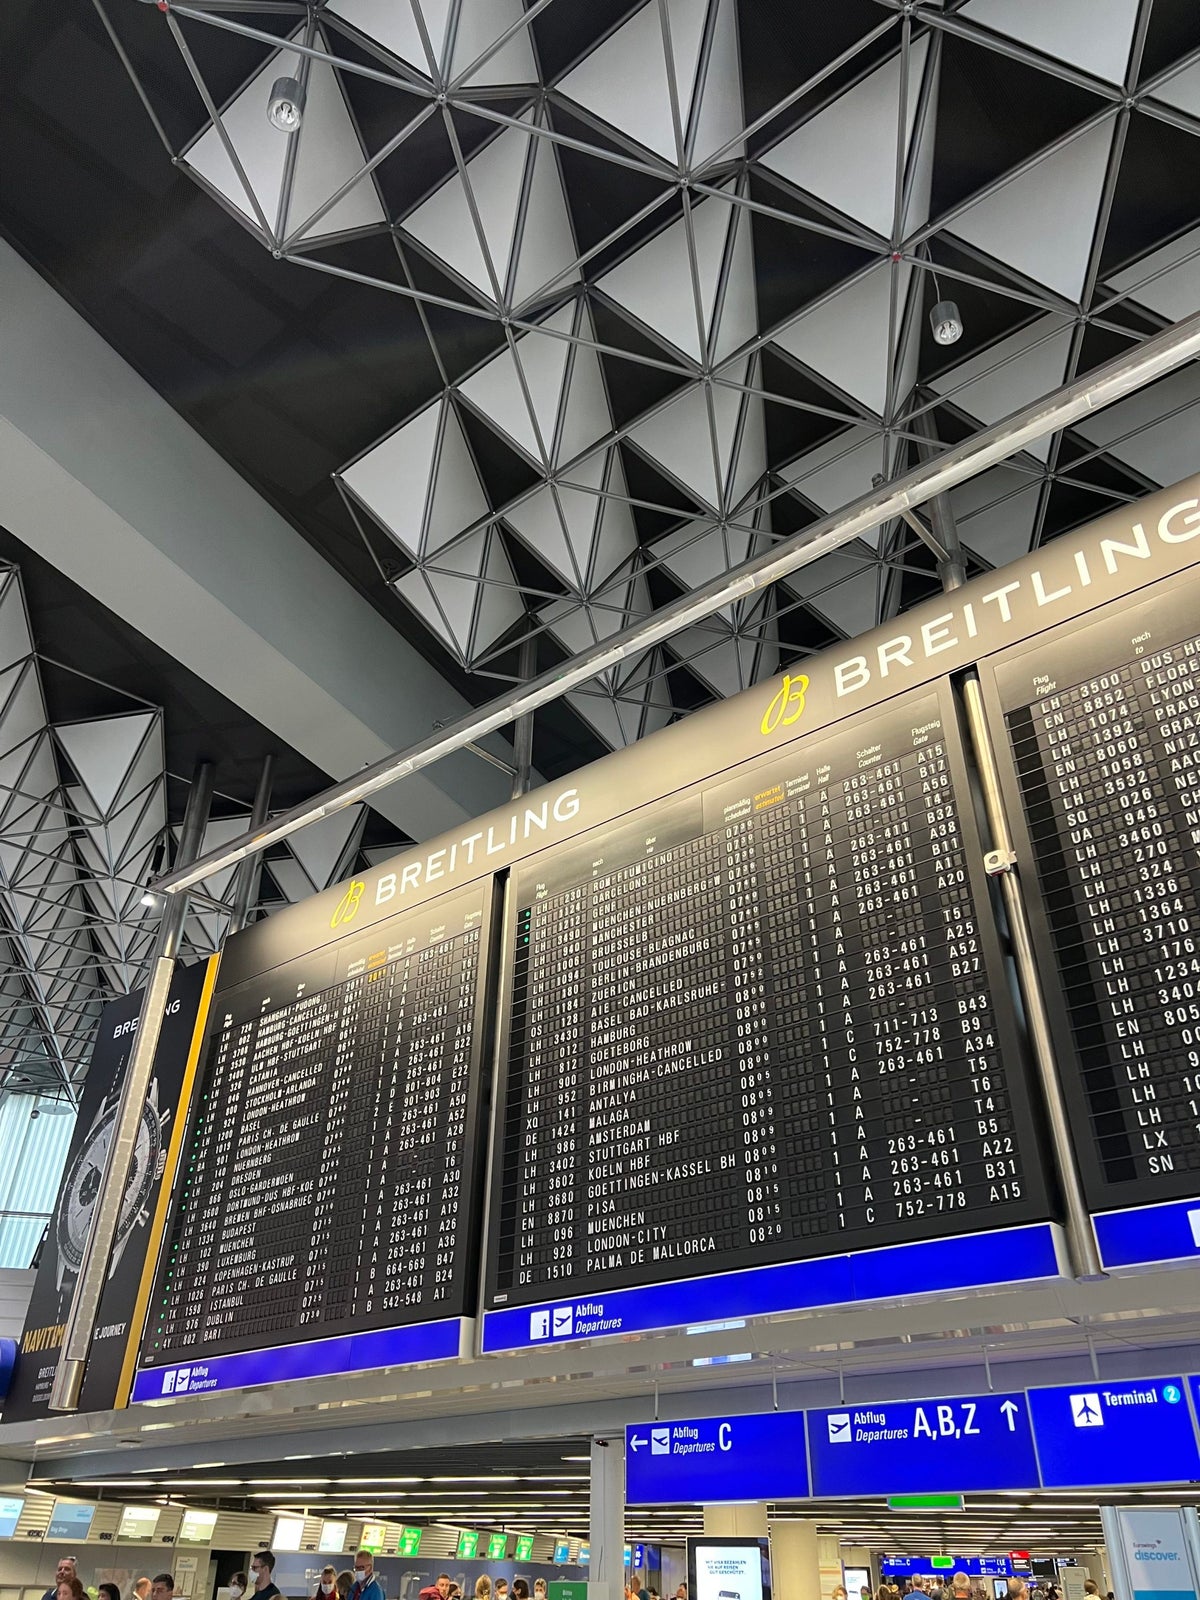 Departures board at Frankfurt Airport